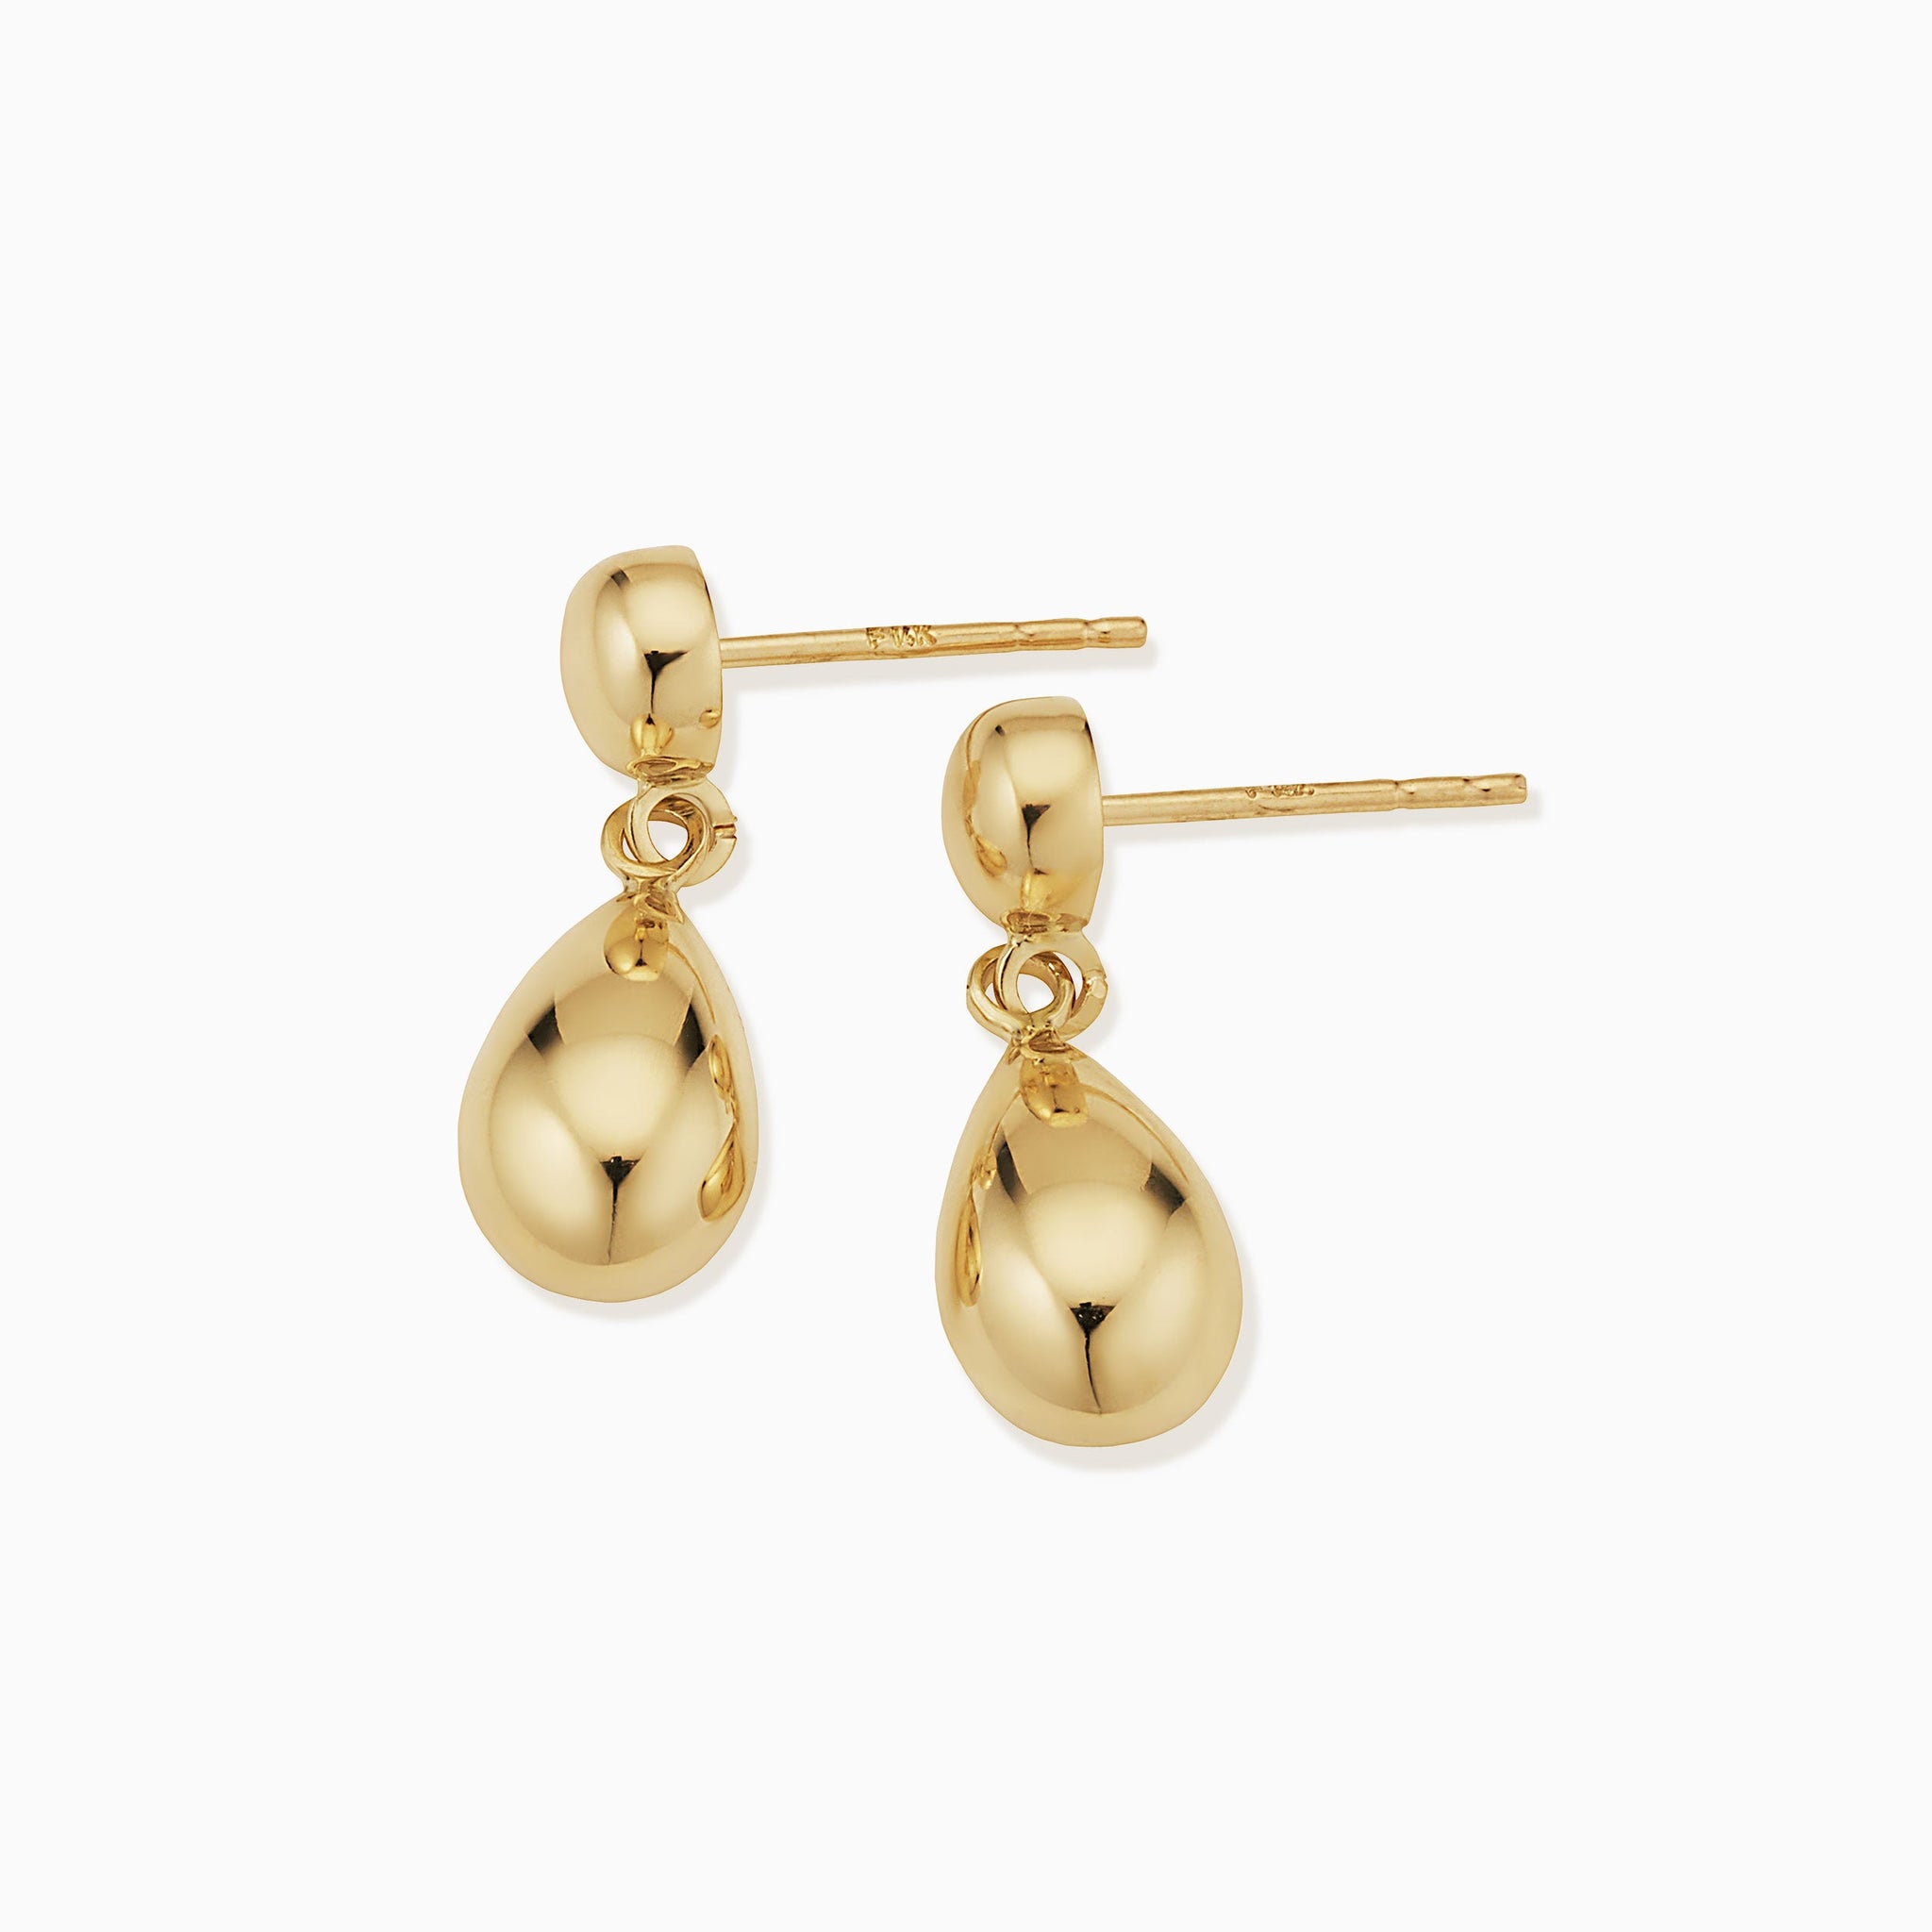 Bead Chain Gold Earrings | Gold Earring | Buy Gold Jewellery Online